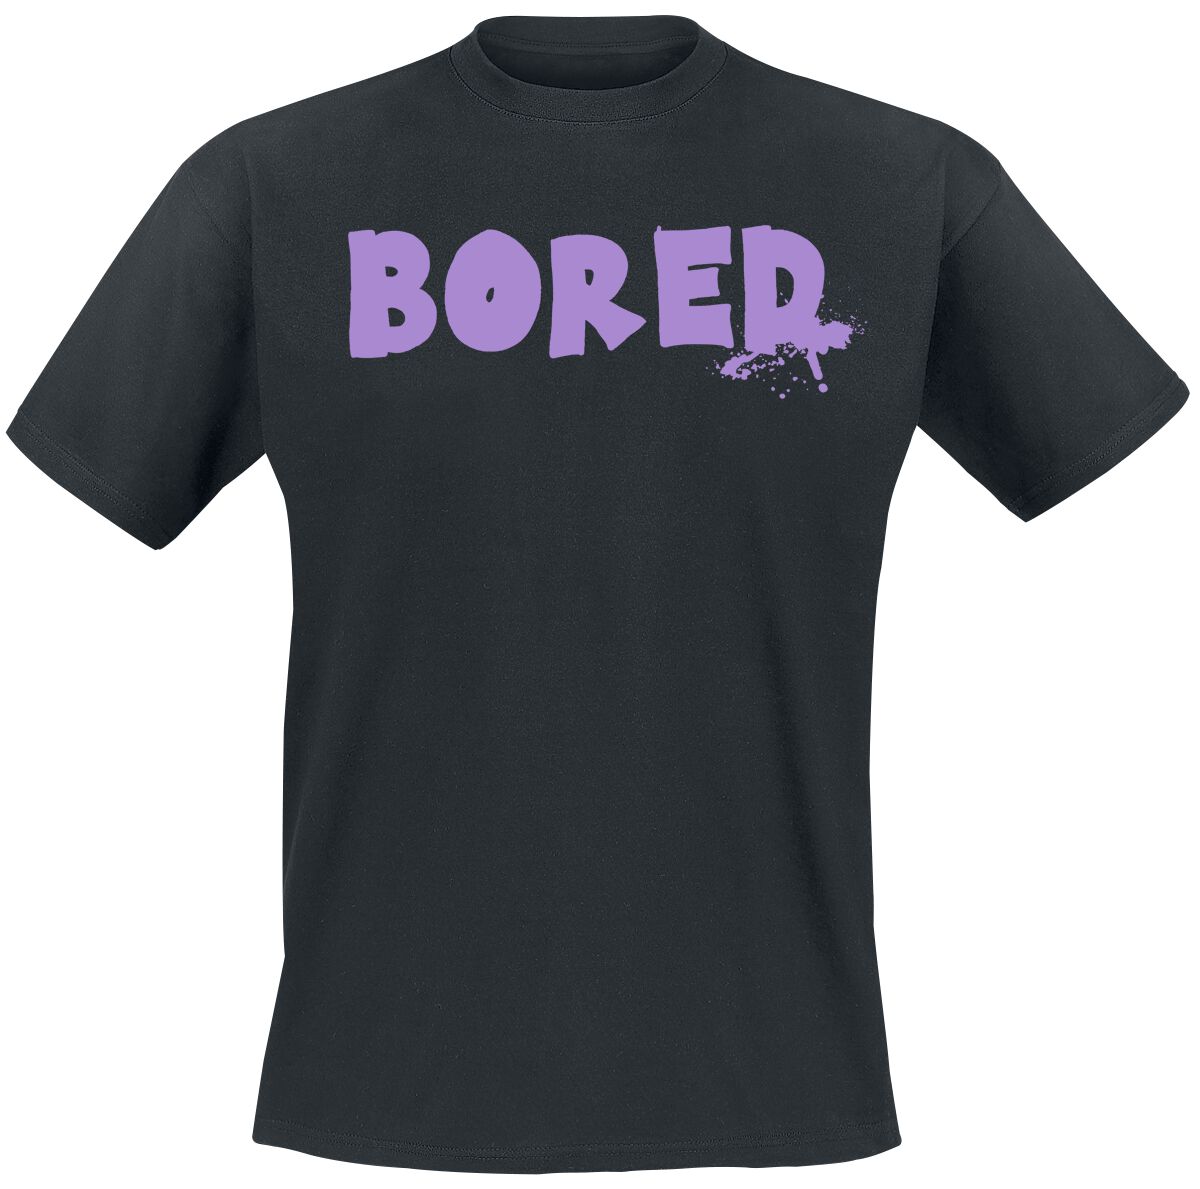 Bored Of Directors T-Shirt - Bored Capeton - S bis XXL - für Männer - Größe XL - schwarz  - EMP exklusives Merchandise!